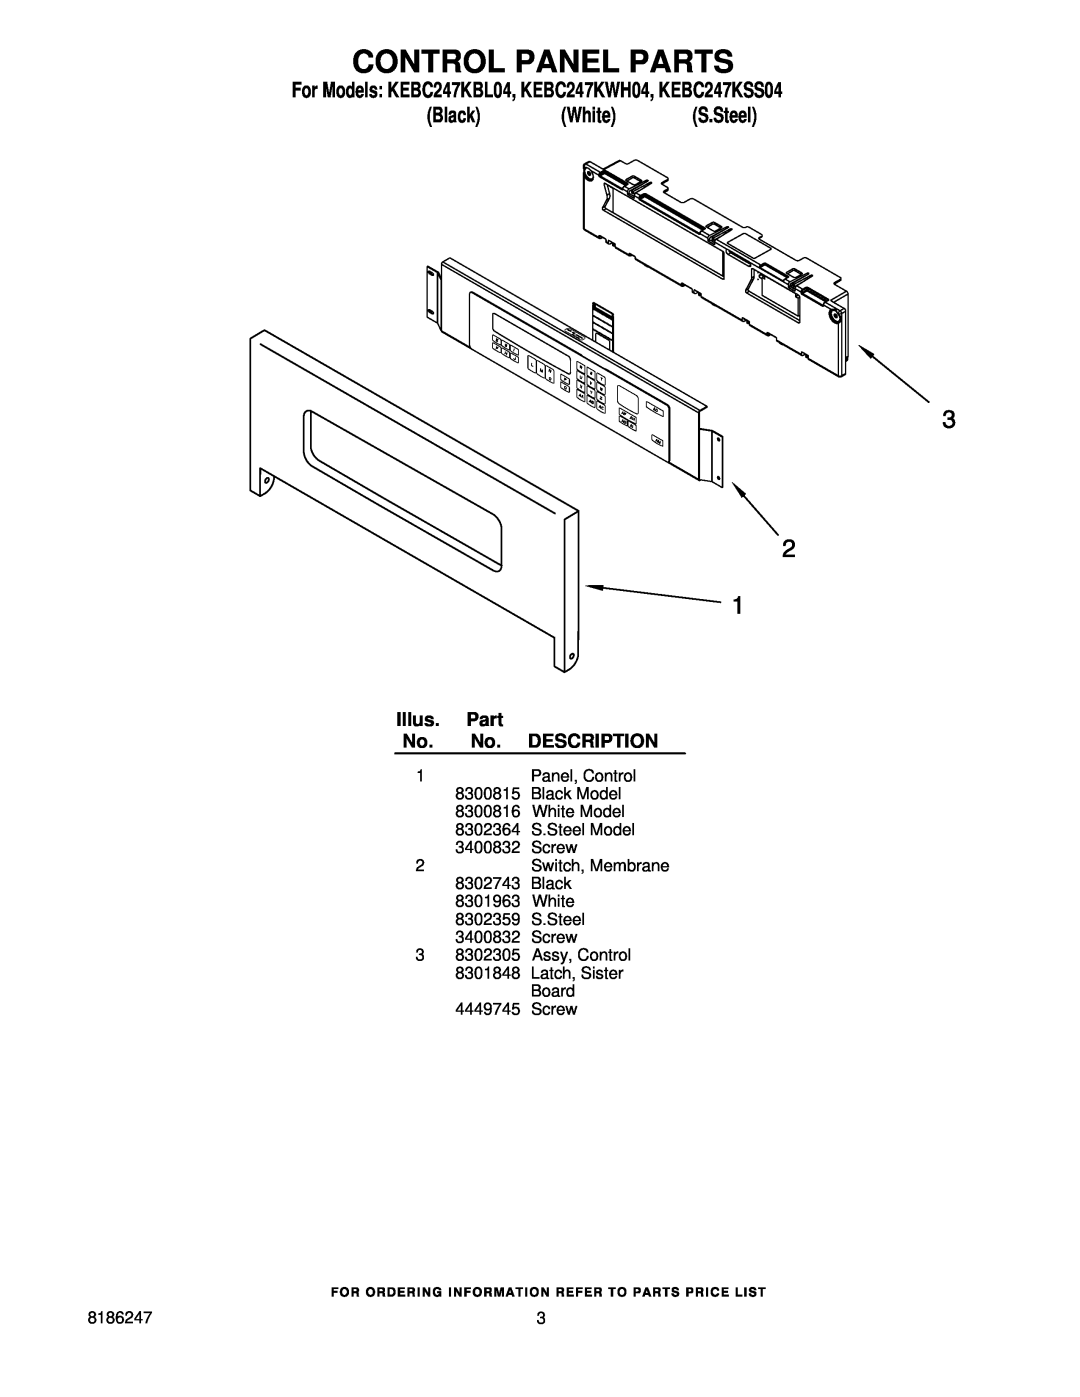 KitchenAid manual Control Panel Parts, For Models KEBC247KBL04, KEBC247KWH04, KEBC247KSS04, Black White S.Steel 